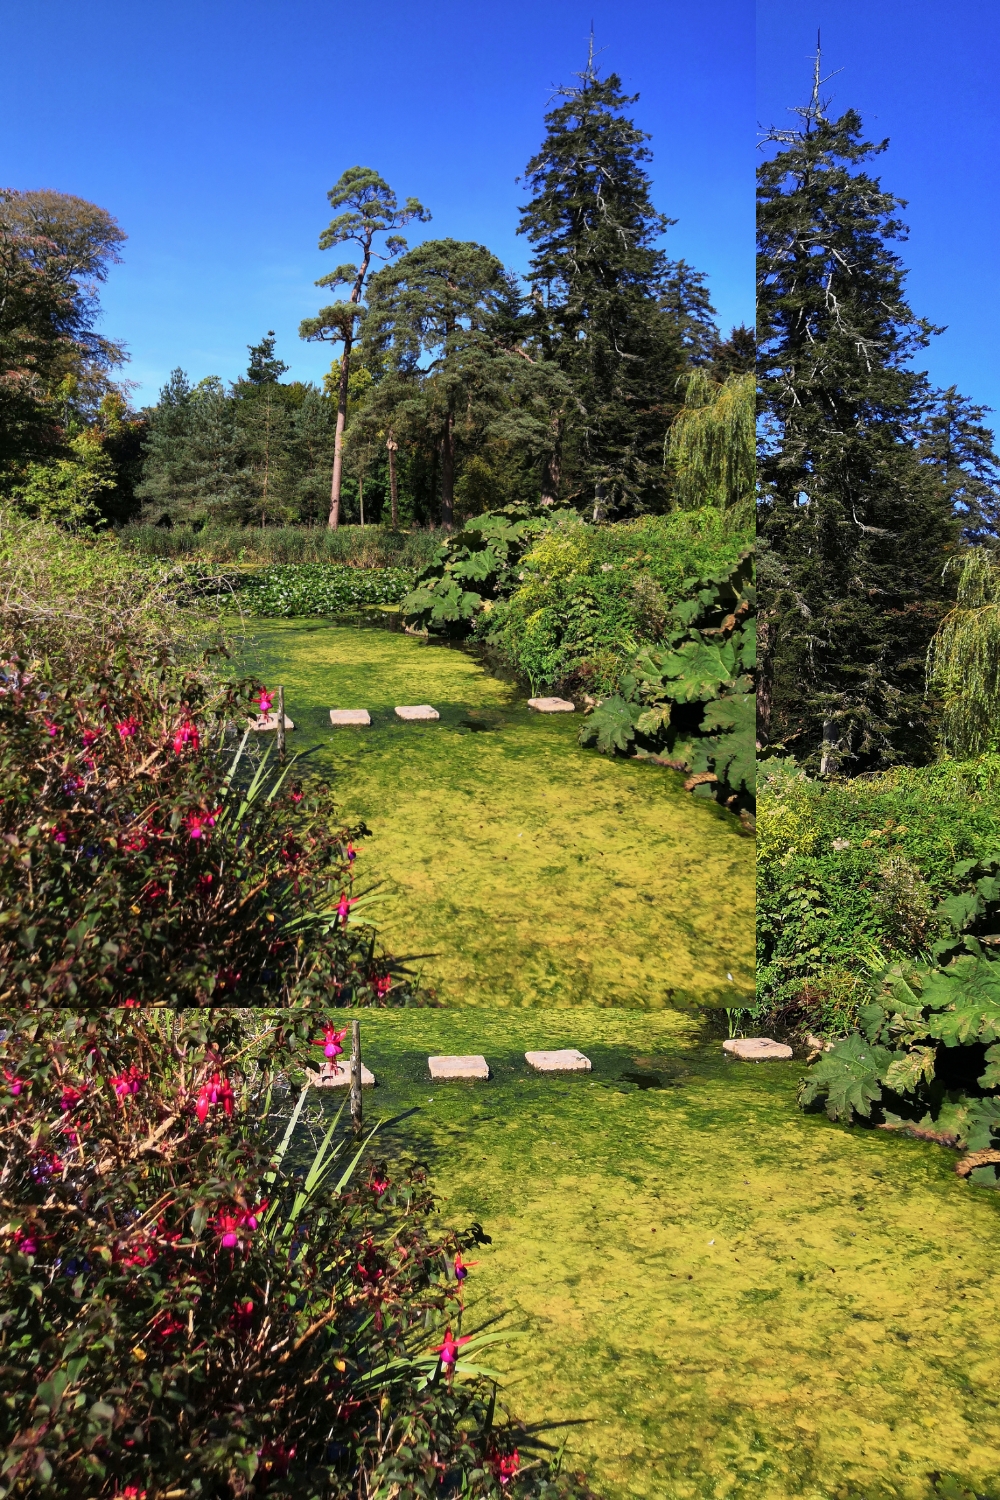 15+ Inspiring Garden Ideas to Transform Your Outdoor Space